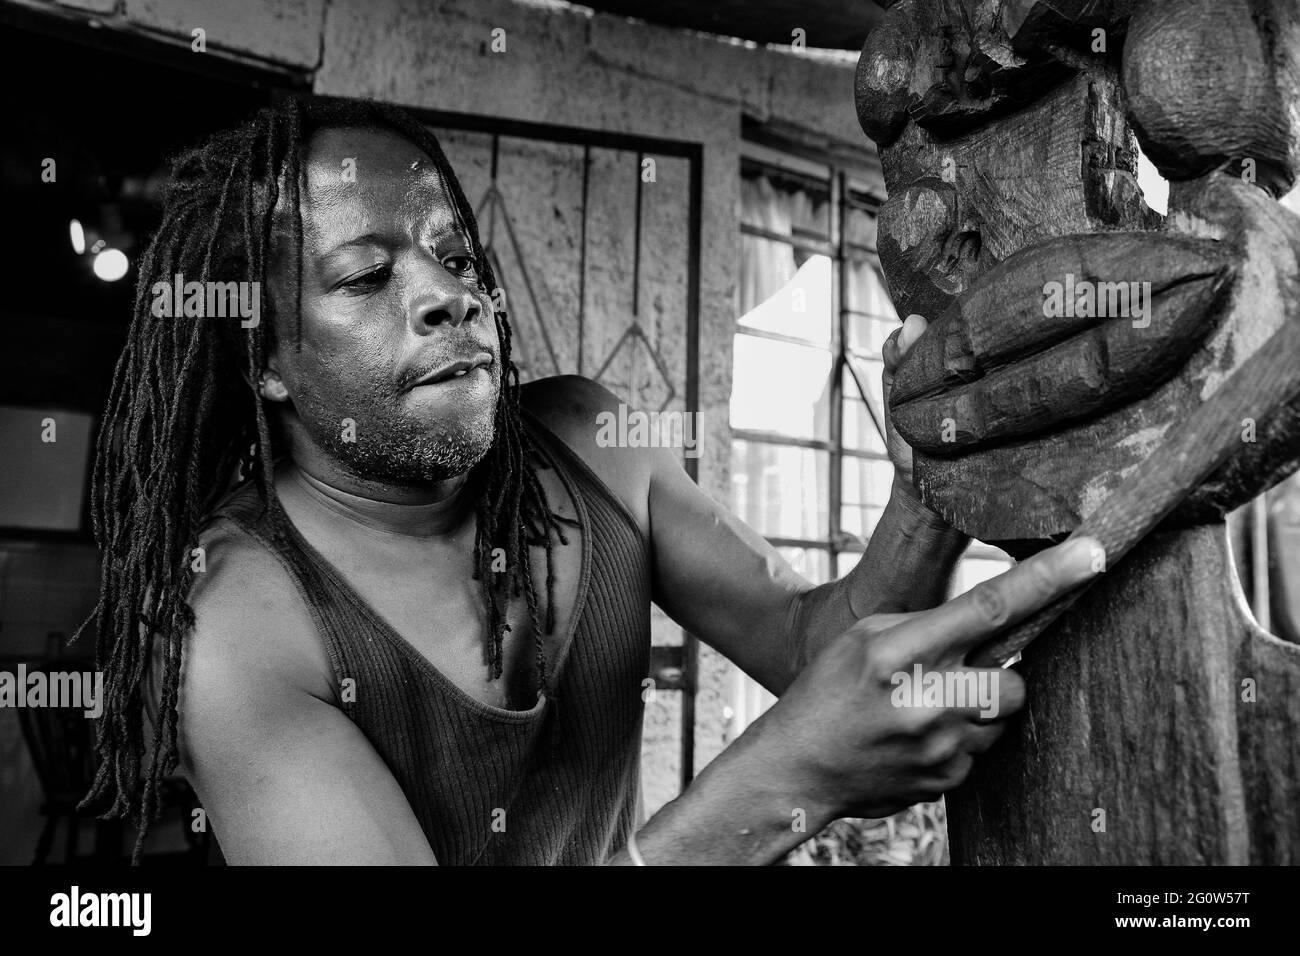 JOHANNESBURG, AFRIQUE DU SUD - 05 janvier 2021: Johannesburg, Afrique du Sud - 17 janvier 2011: African Man sculpteur sculptant une statue traditionnelle de woo Banque D'Images